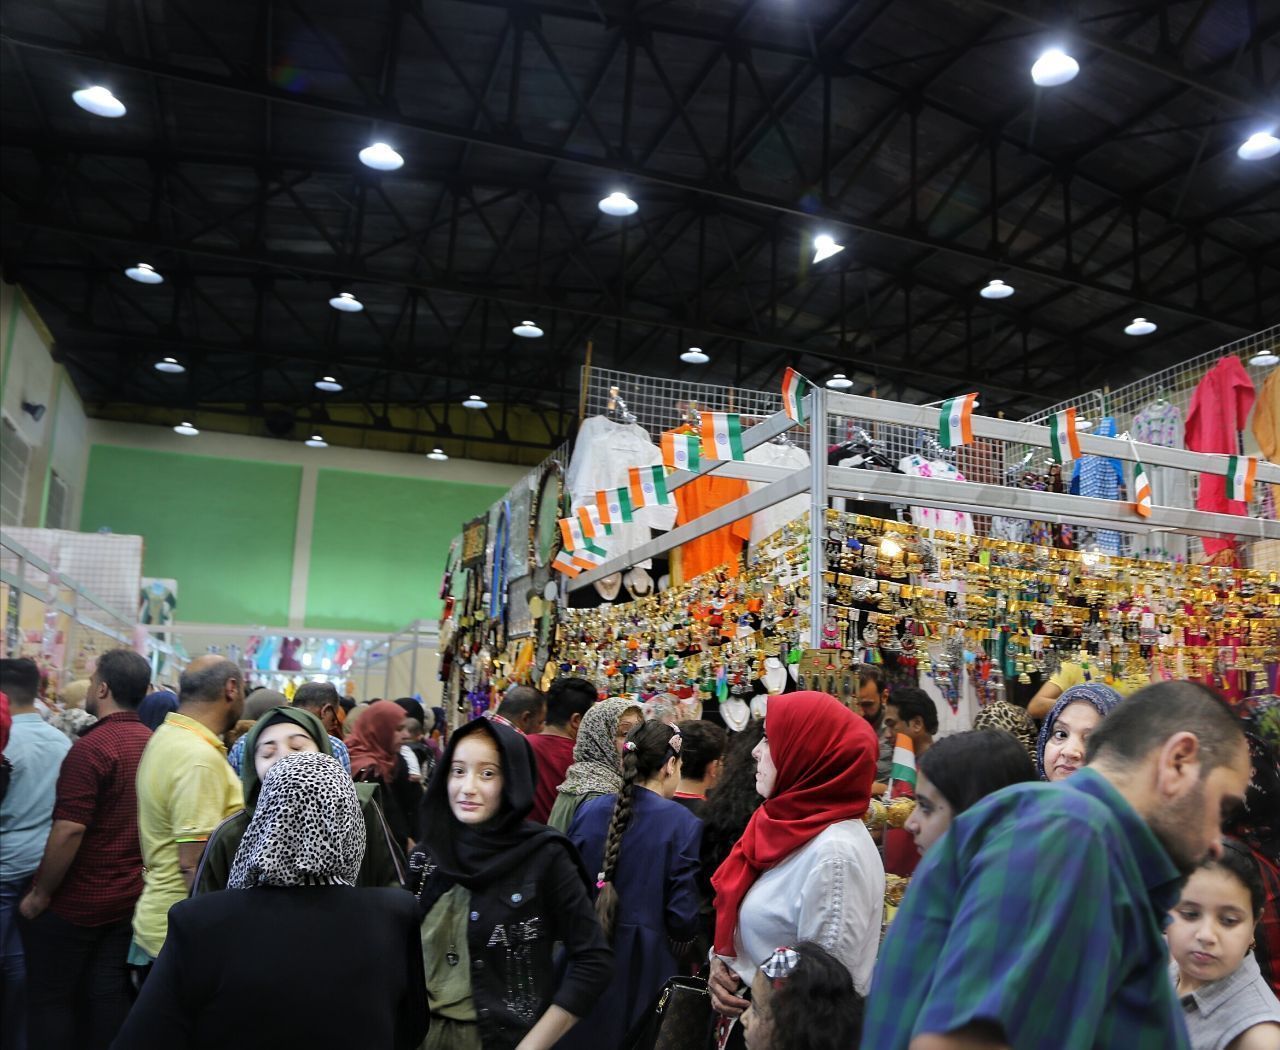 المهرجان الدولي الذي أقيم بين العراق، وجمهورية مصر العربية، في جامعة الموصل